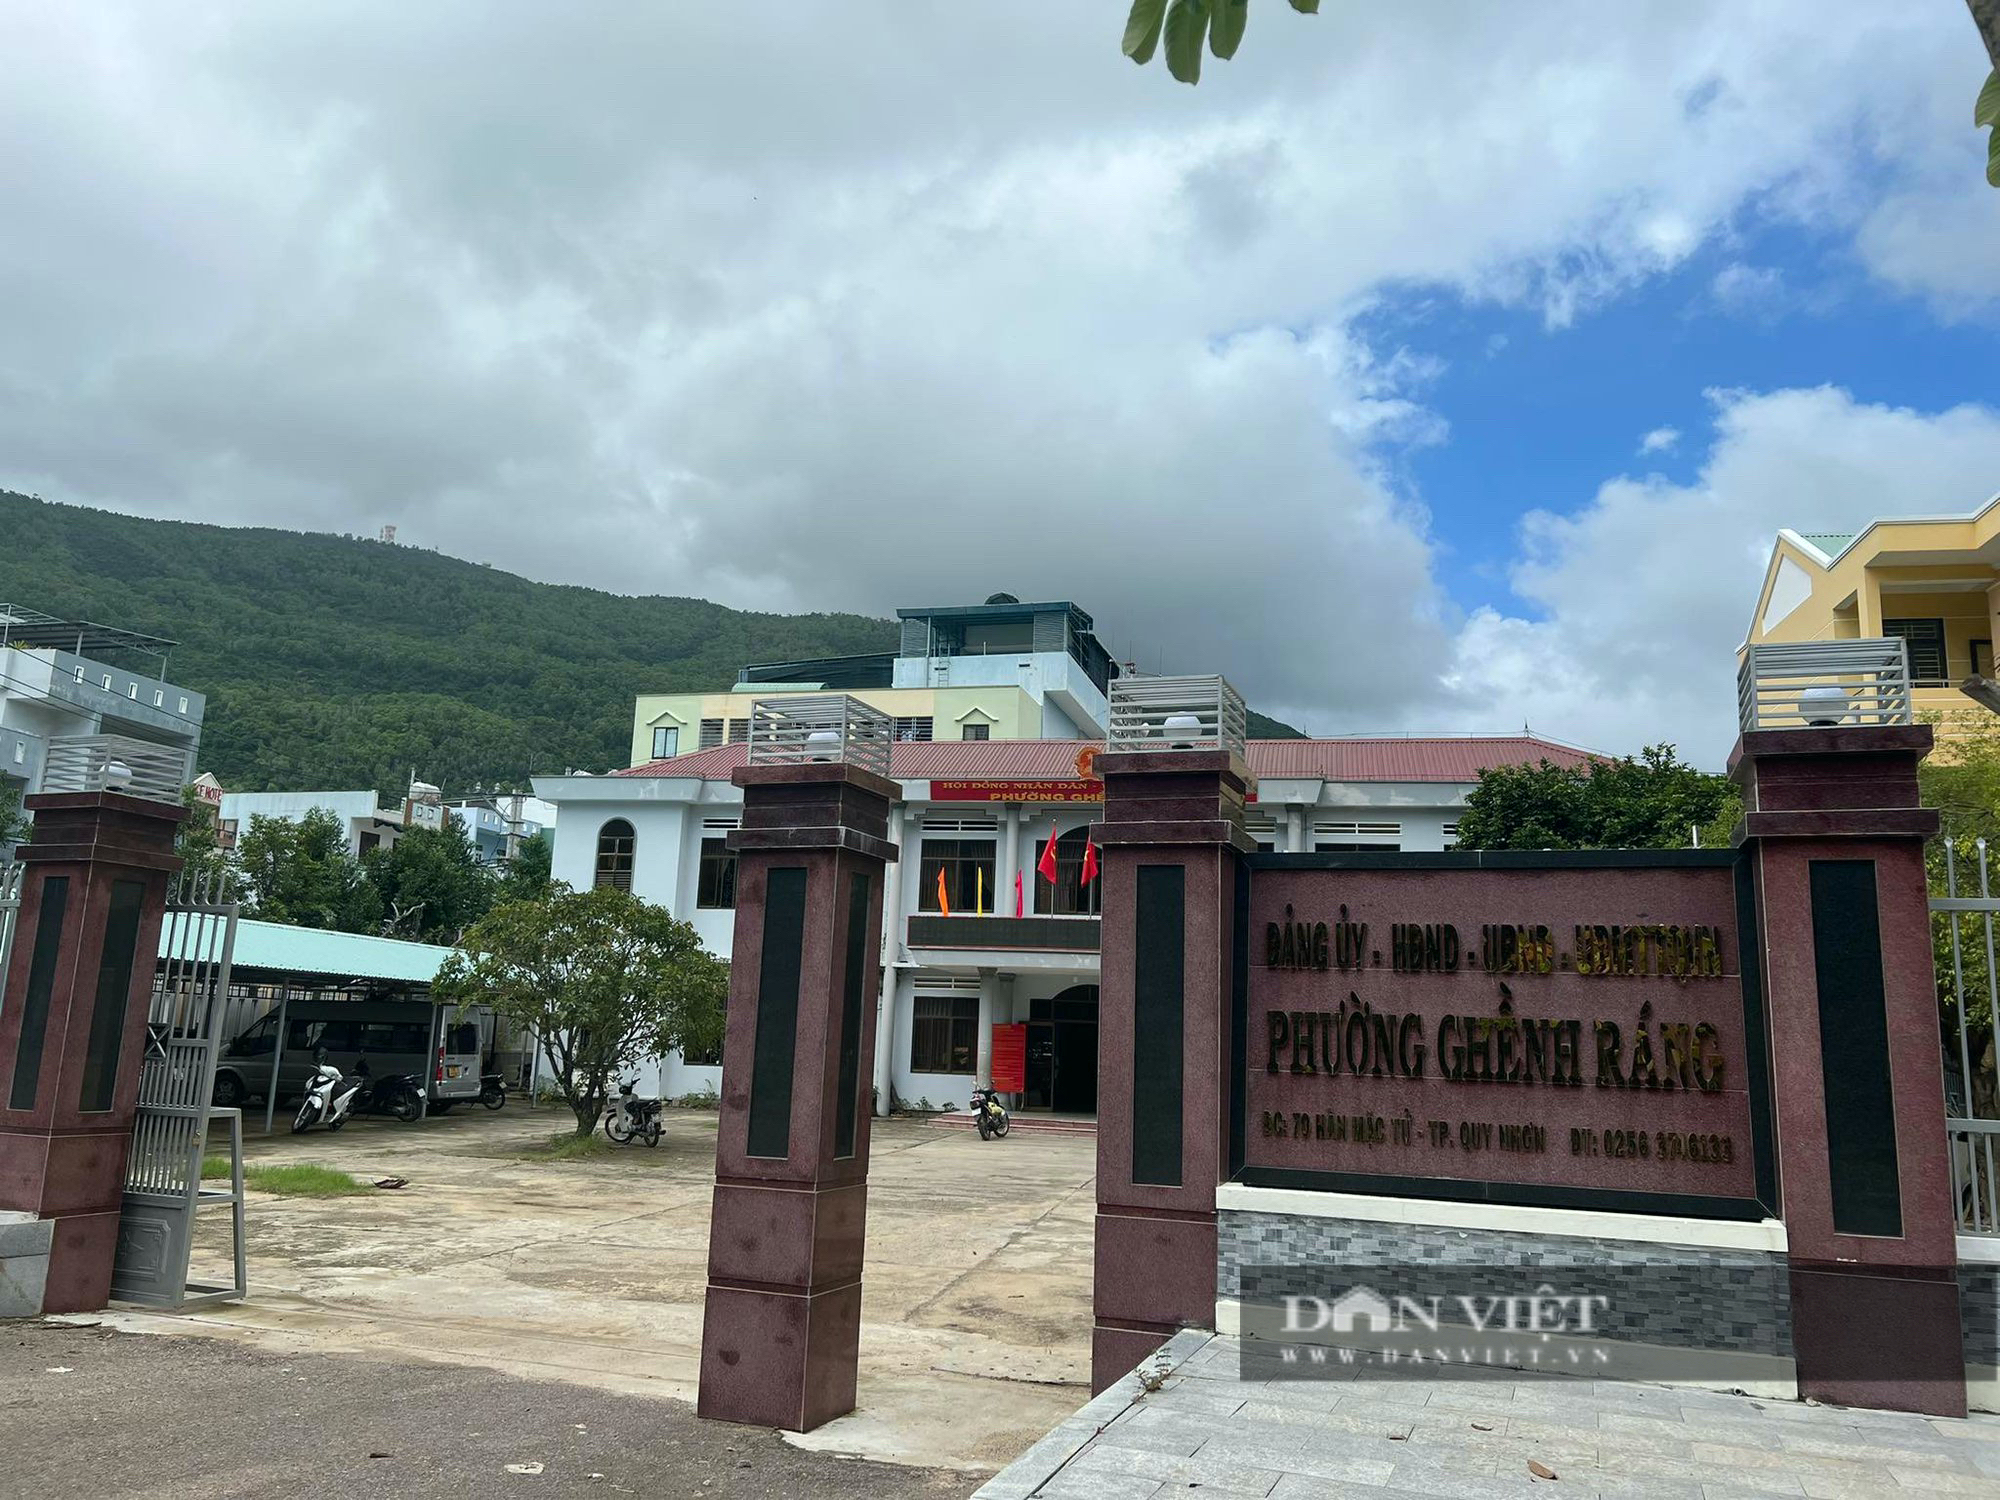 Bình Định: Phó Chủ tịch phường Ghềnh Ráng hơn 1 tháng nay không đến trụ sở làm việc - Ảnh 1.